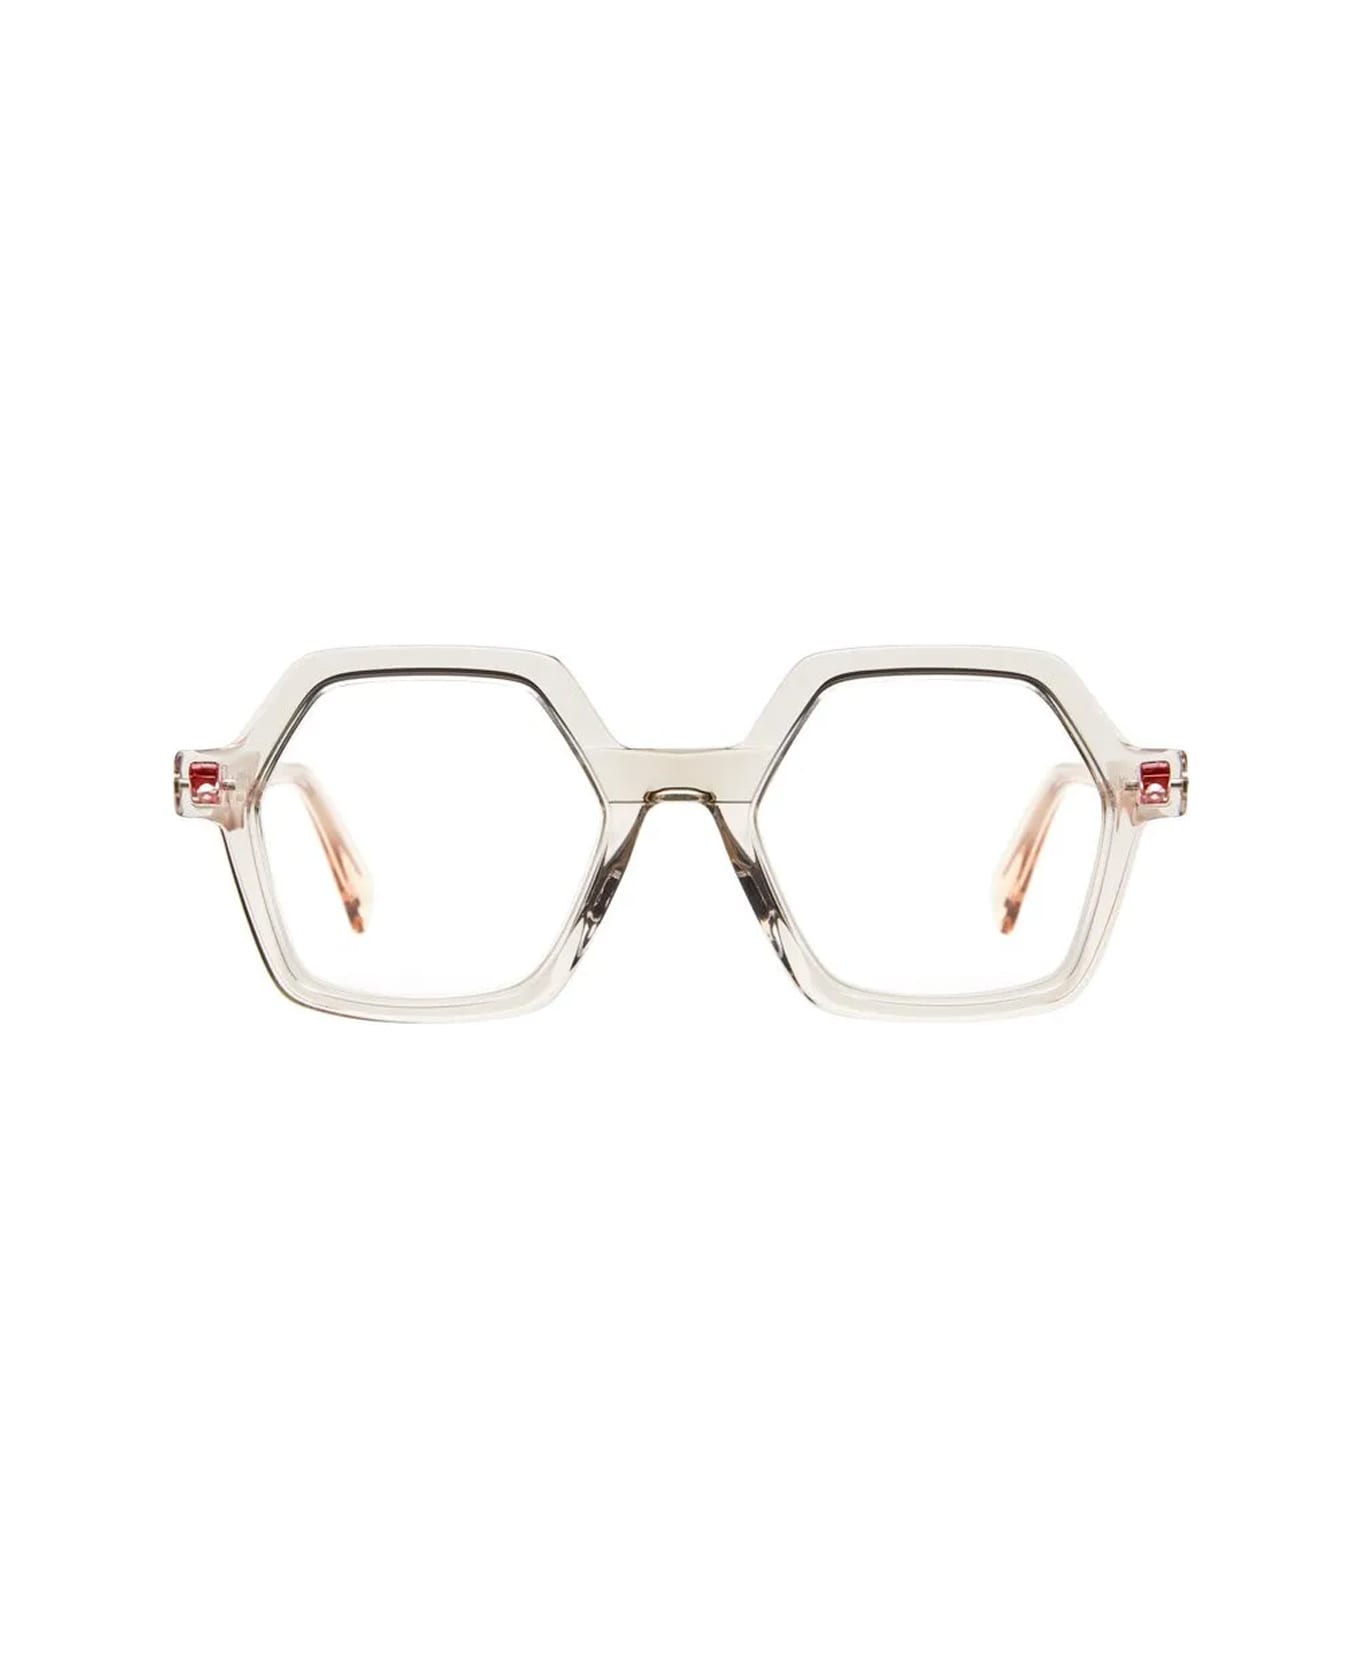 Kuboraum Maske Q8 Vt Glasses - Beige